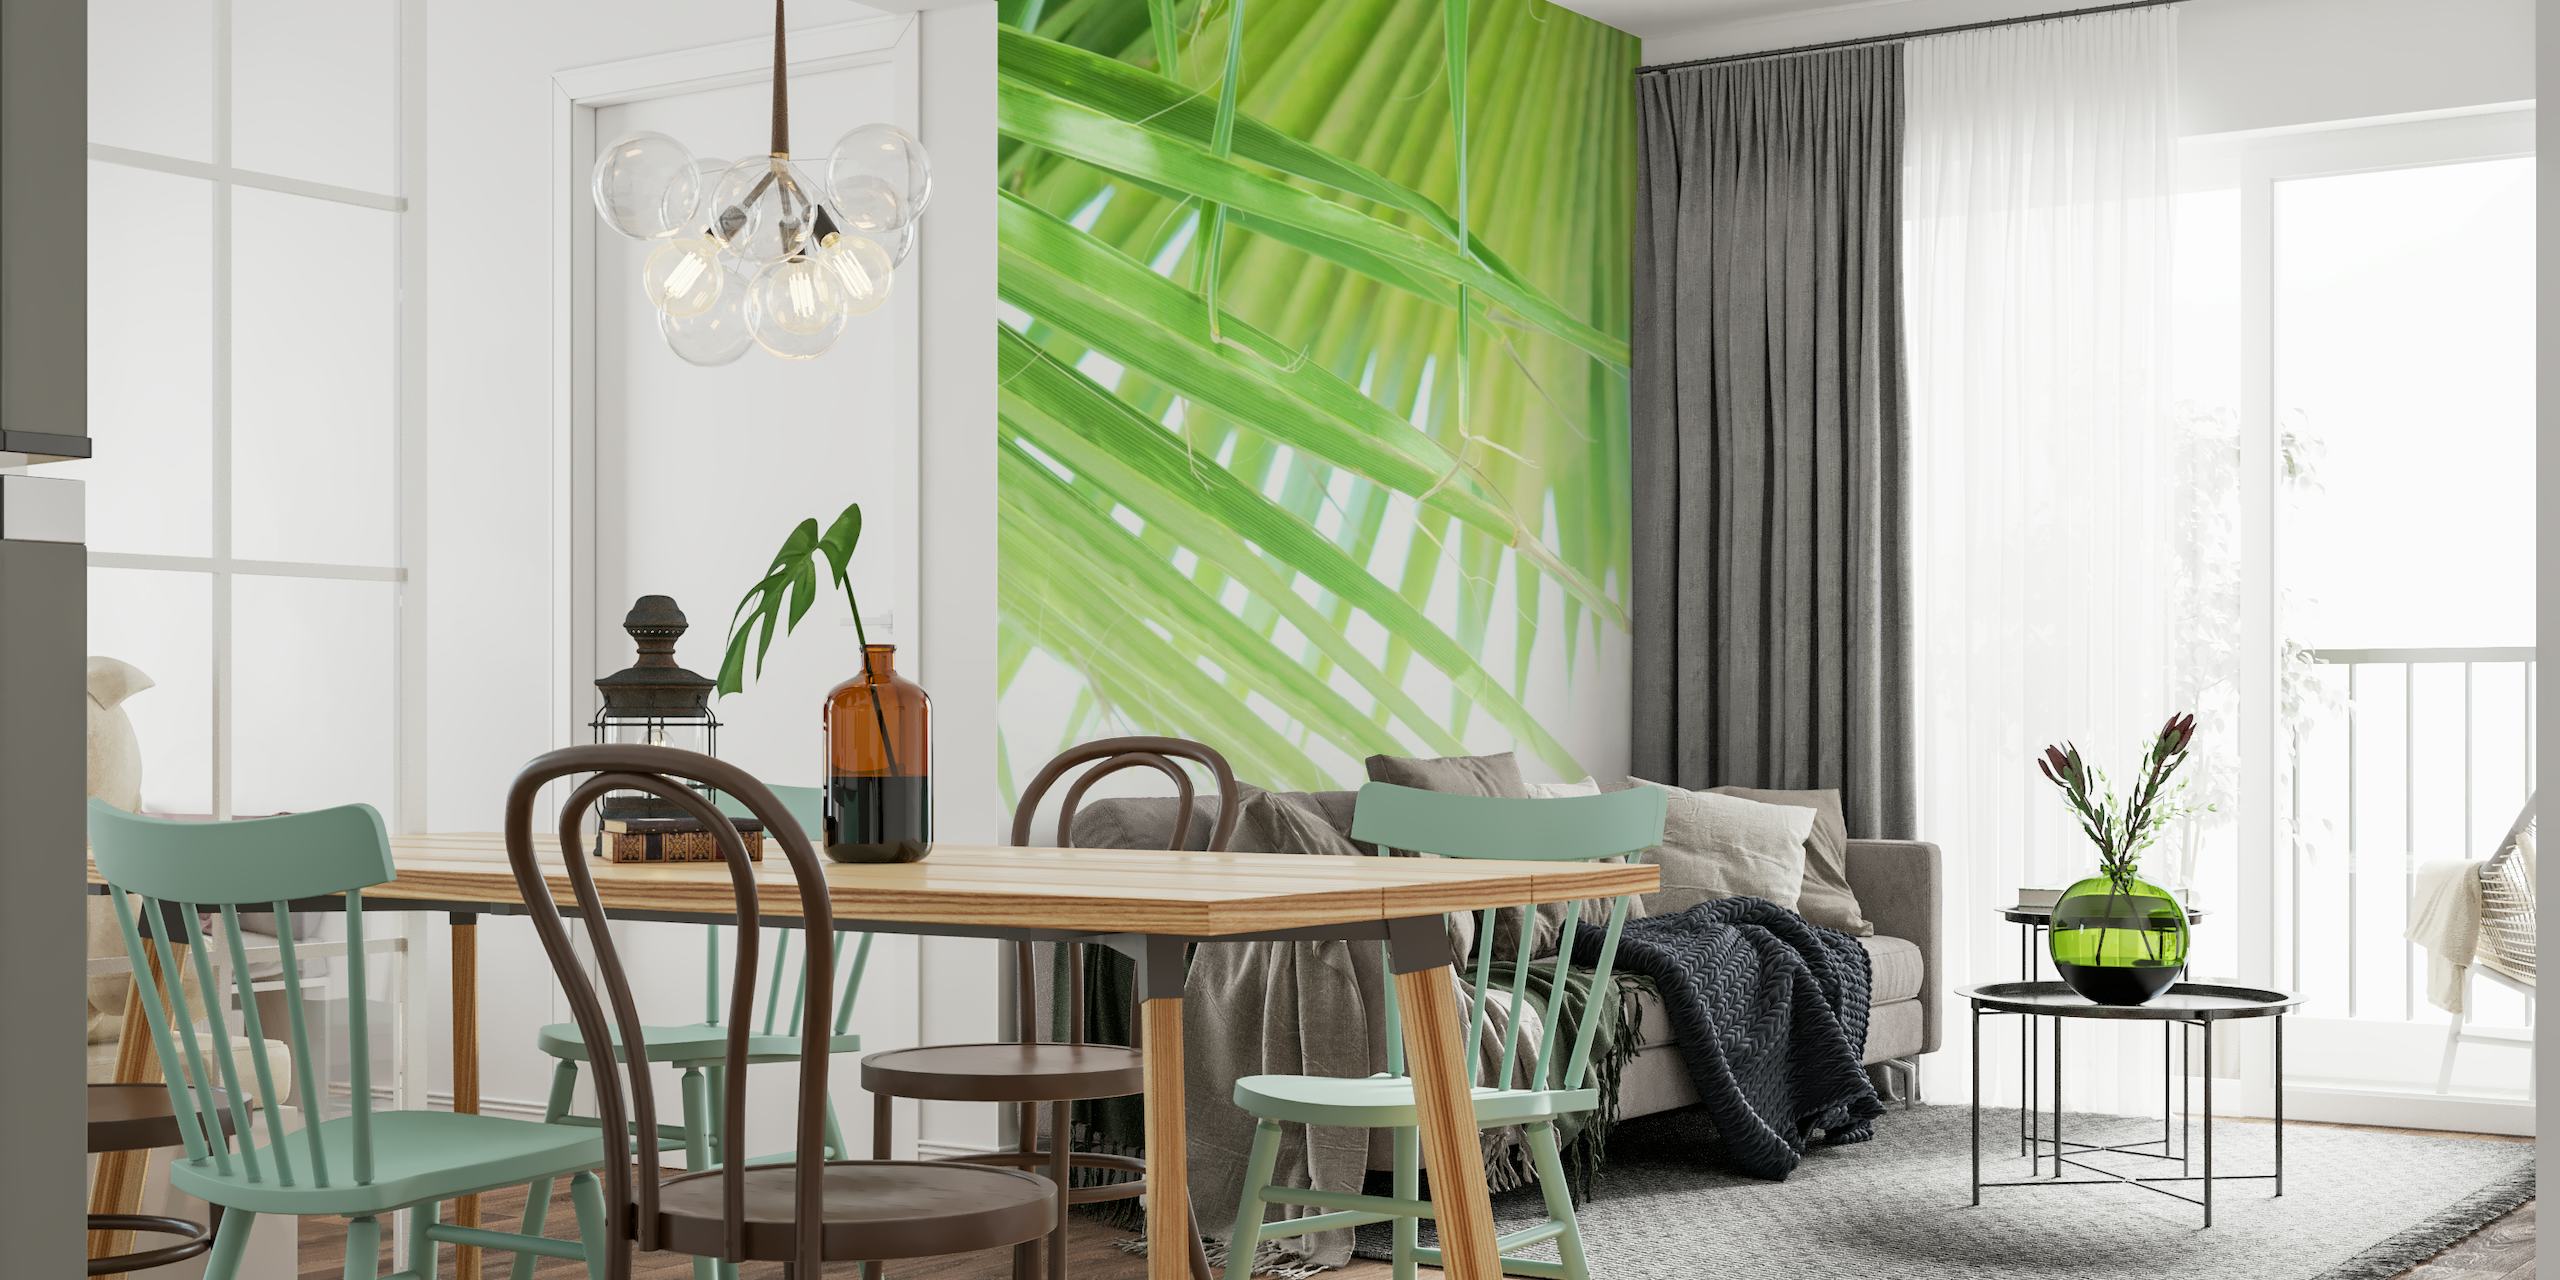 Fotomural de hojas de palmera verde para una decoración refrescante de la habitación